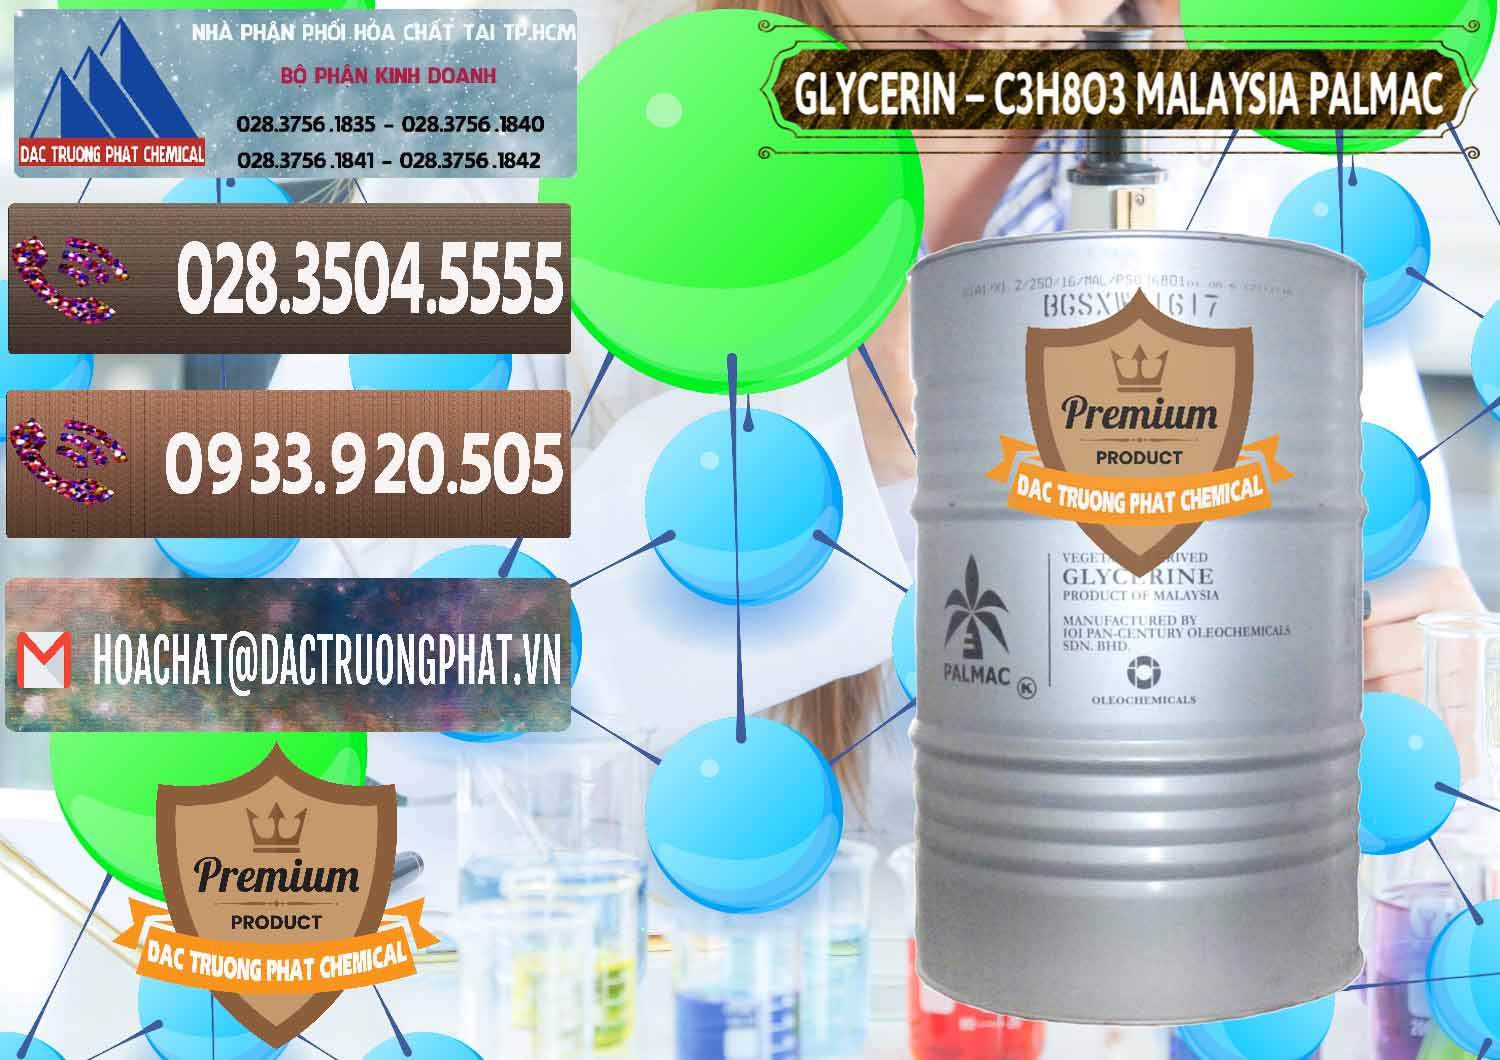 Chuyên bán ( cung cấp ) Glycerin – C3H8O3 99.7% Malaysia Palmac - 0067 - Cty cung cấp _ kinh doanh hóa chất tại TP.HCM - hoachatviet.net